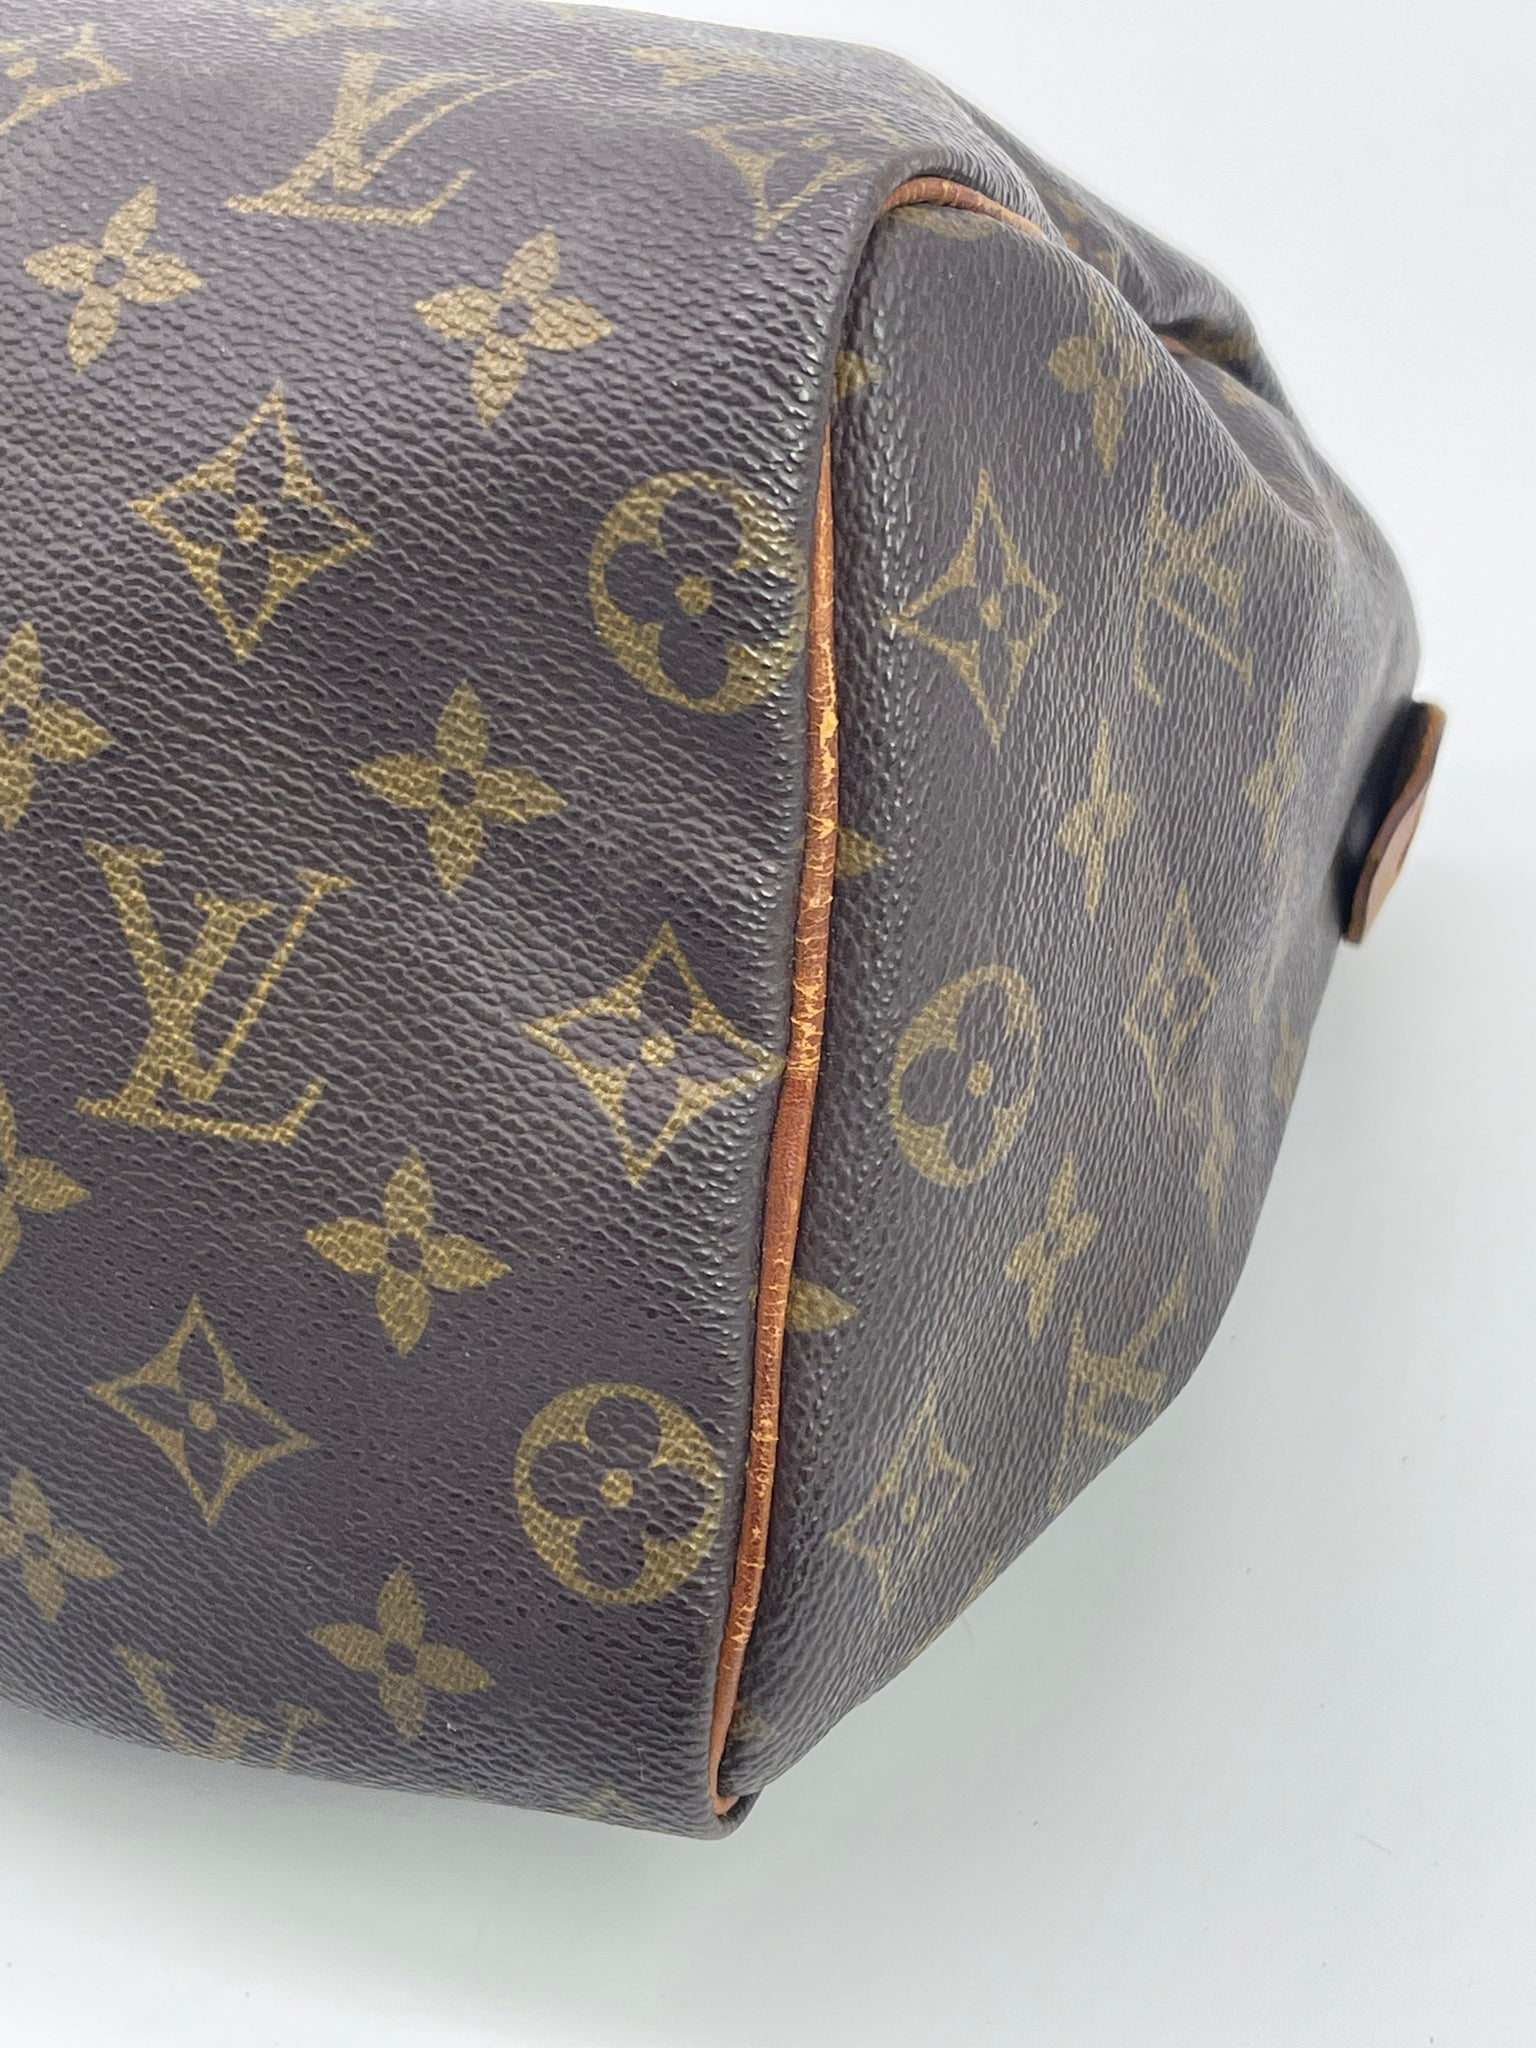 PRELOVED Louis Vuitton Speedy 25 Monogram Bag 891FC 090822